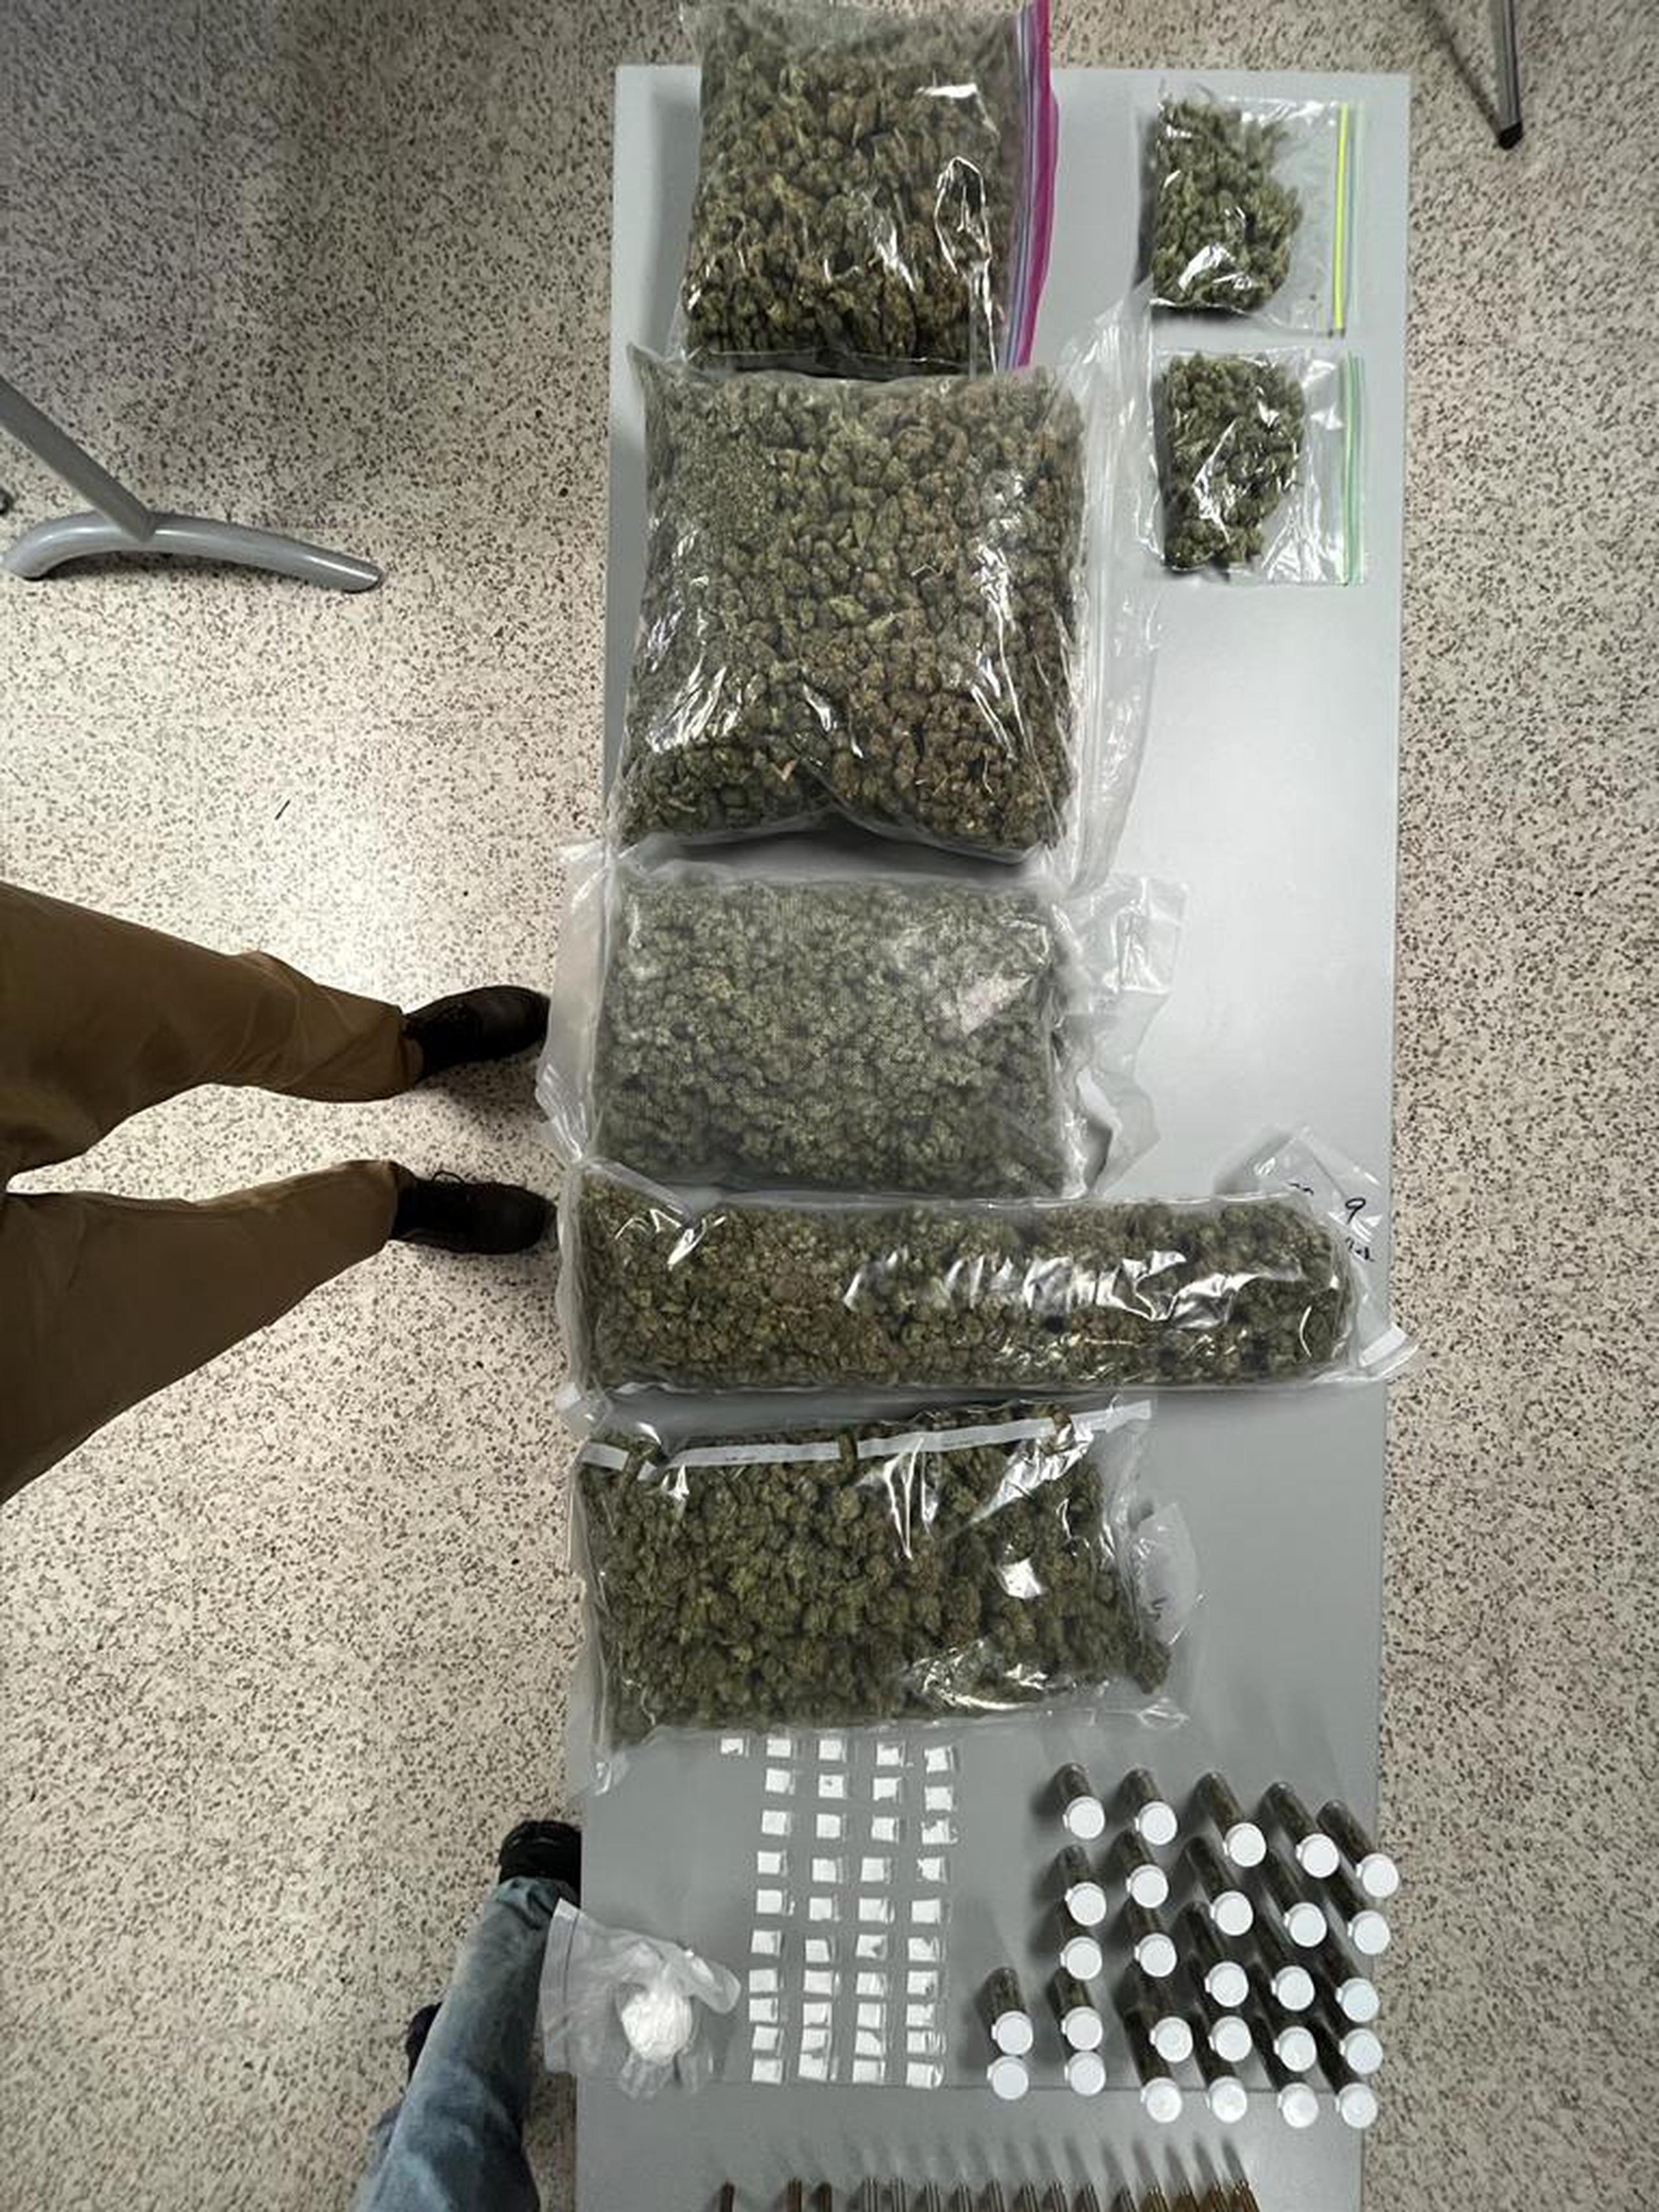 La División de Drogas Metropolitana ocupó 8 libras de marihuana y gran cantidad de otras sustancias controladas durante un allanamiento en una residencia de la calle Gilberto Monroig, en Santurce.